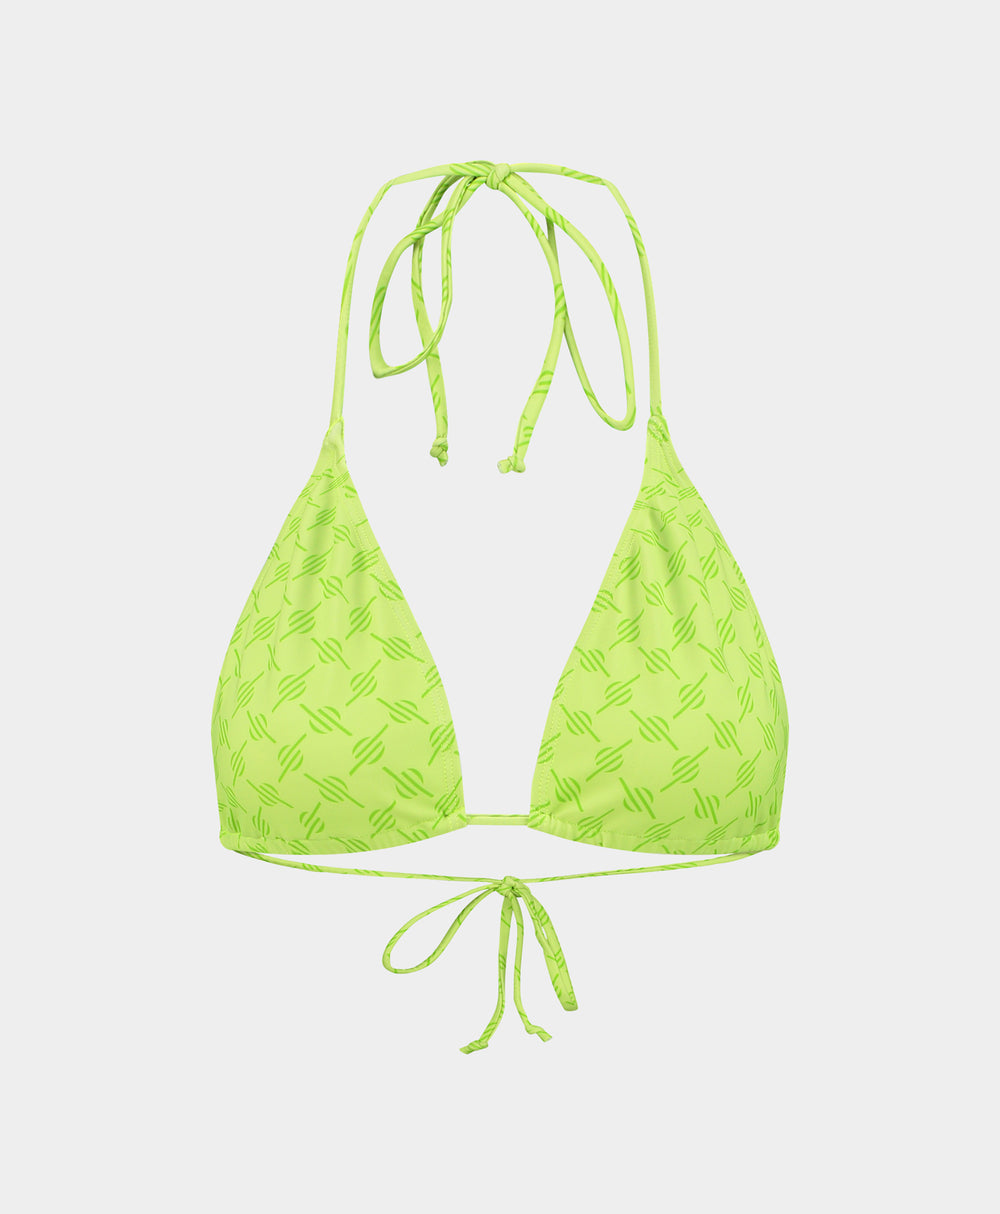 DP - Daiquiri Green Zazi Monogram Bikini Top - Packshot - Front